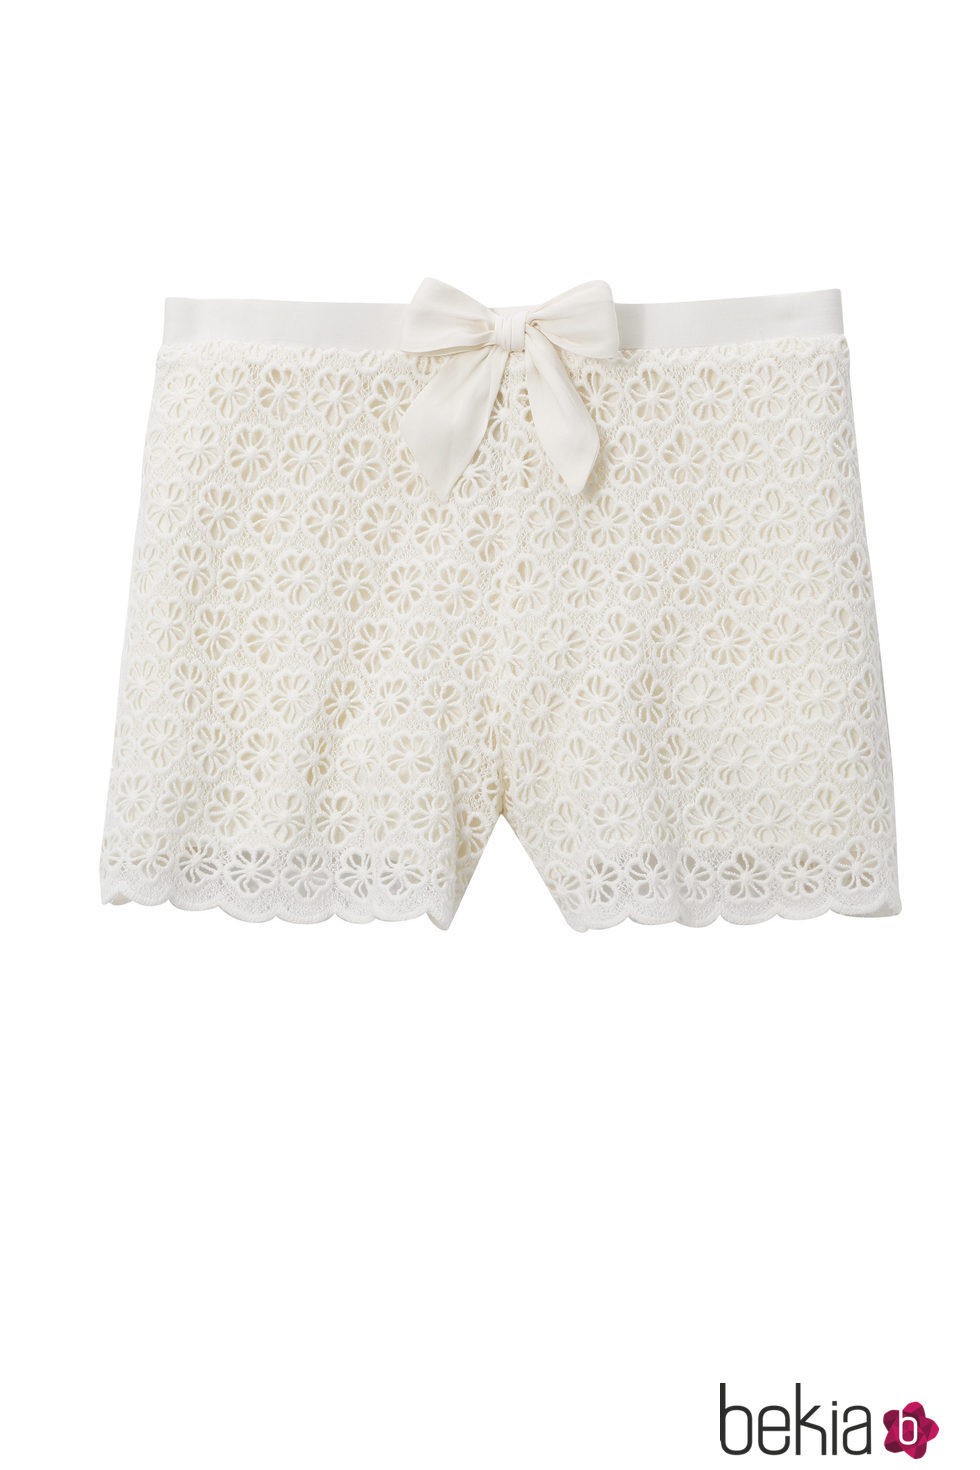 Short de pijama tejido blanco de la colección primavera/verano 2016